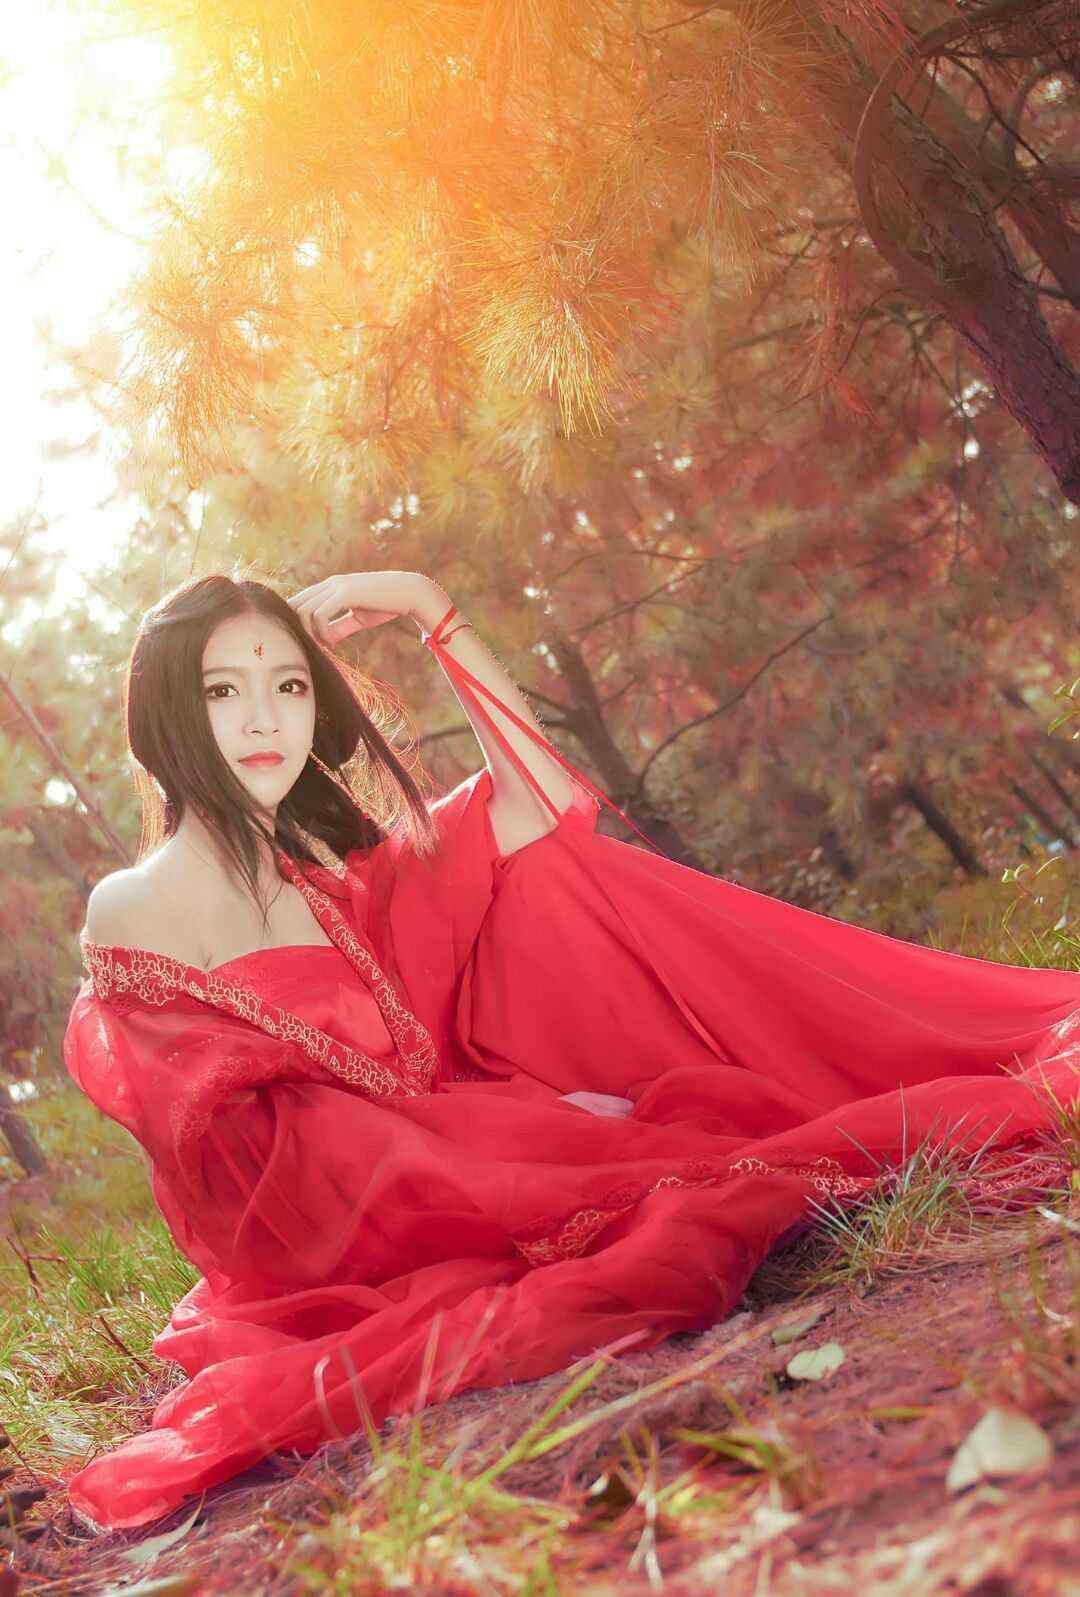 【古装红衣少女】---苏燕-中关村在线摄影论坛